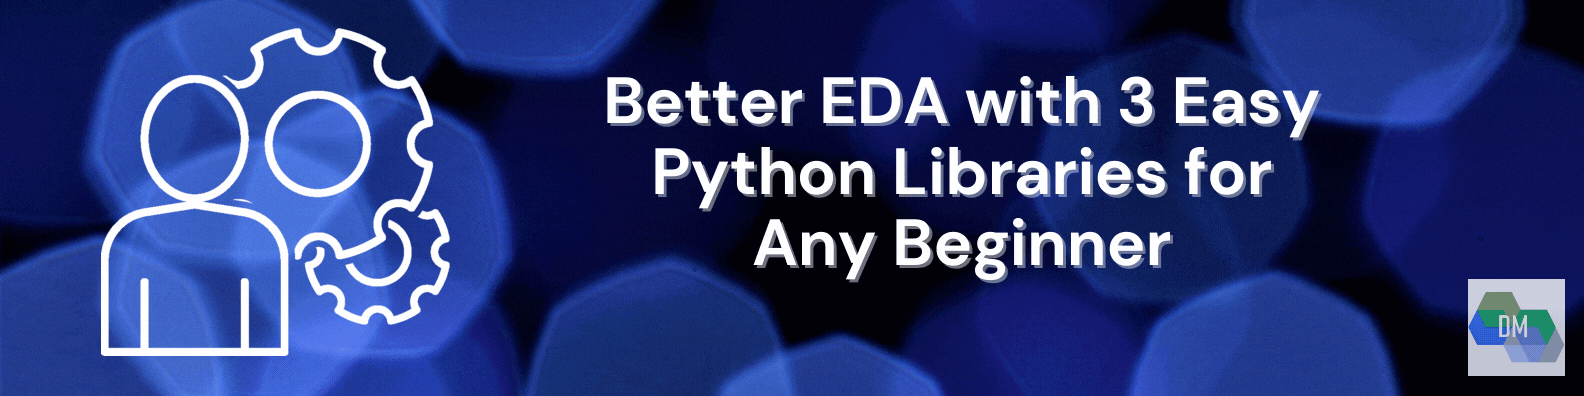 EDA Python Libraries image